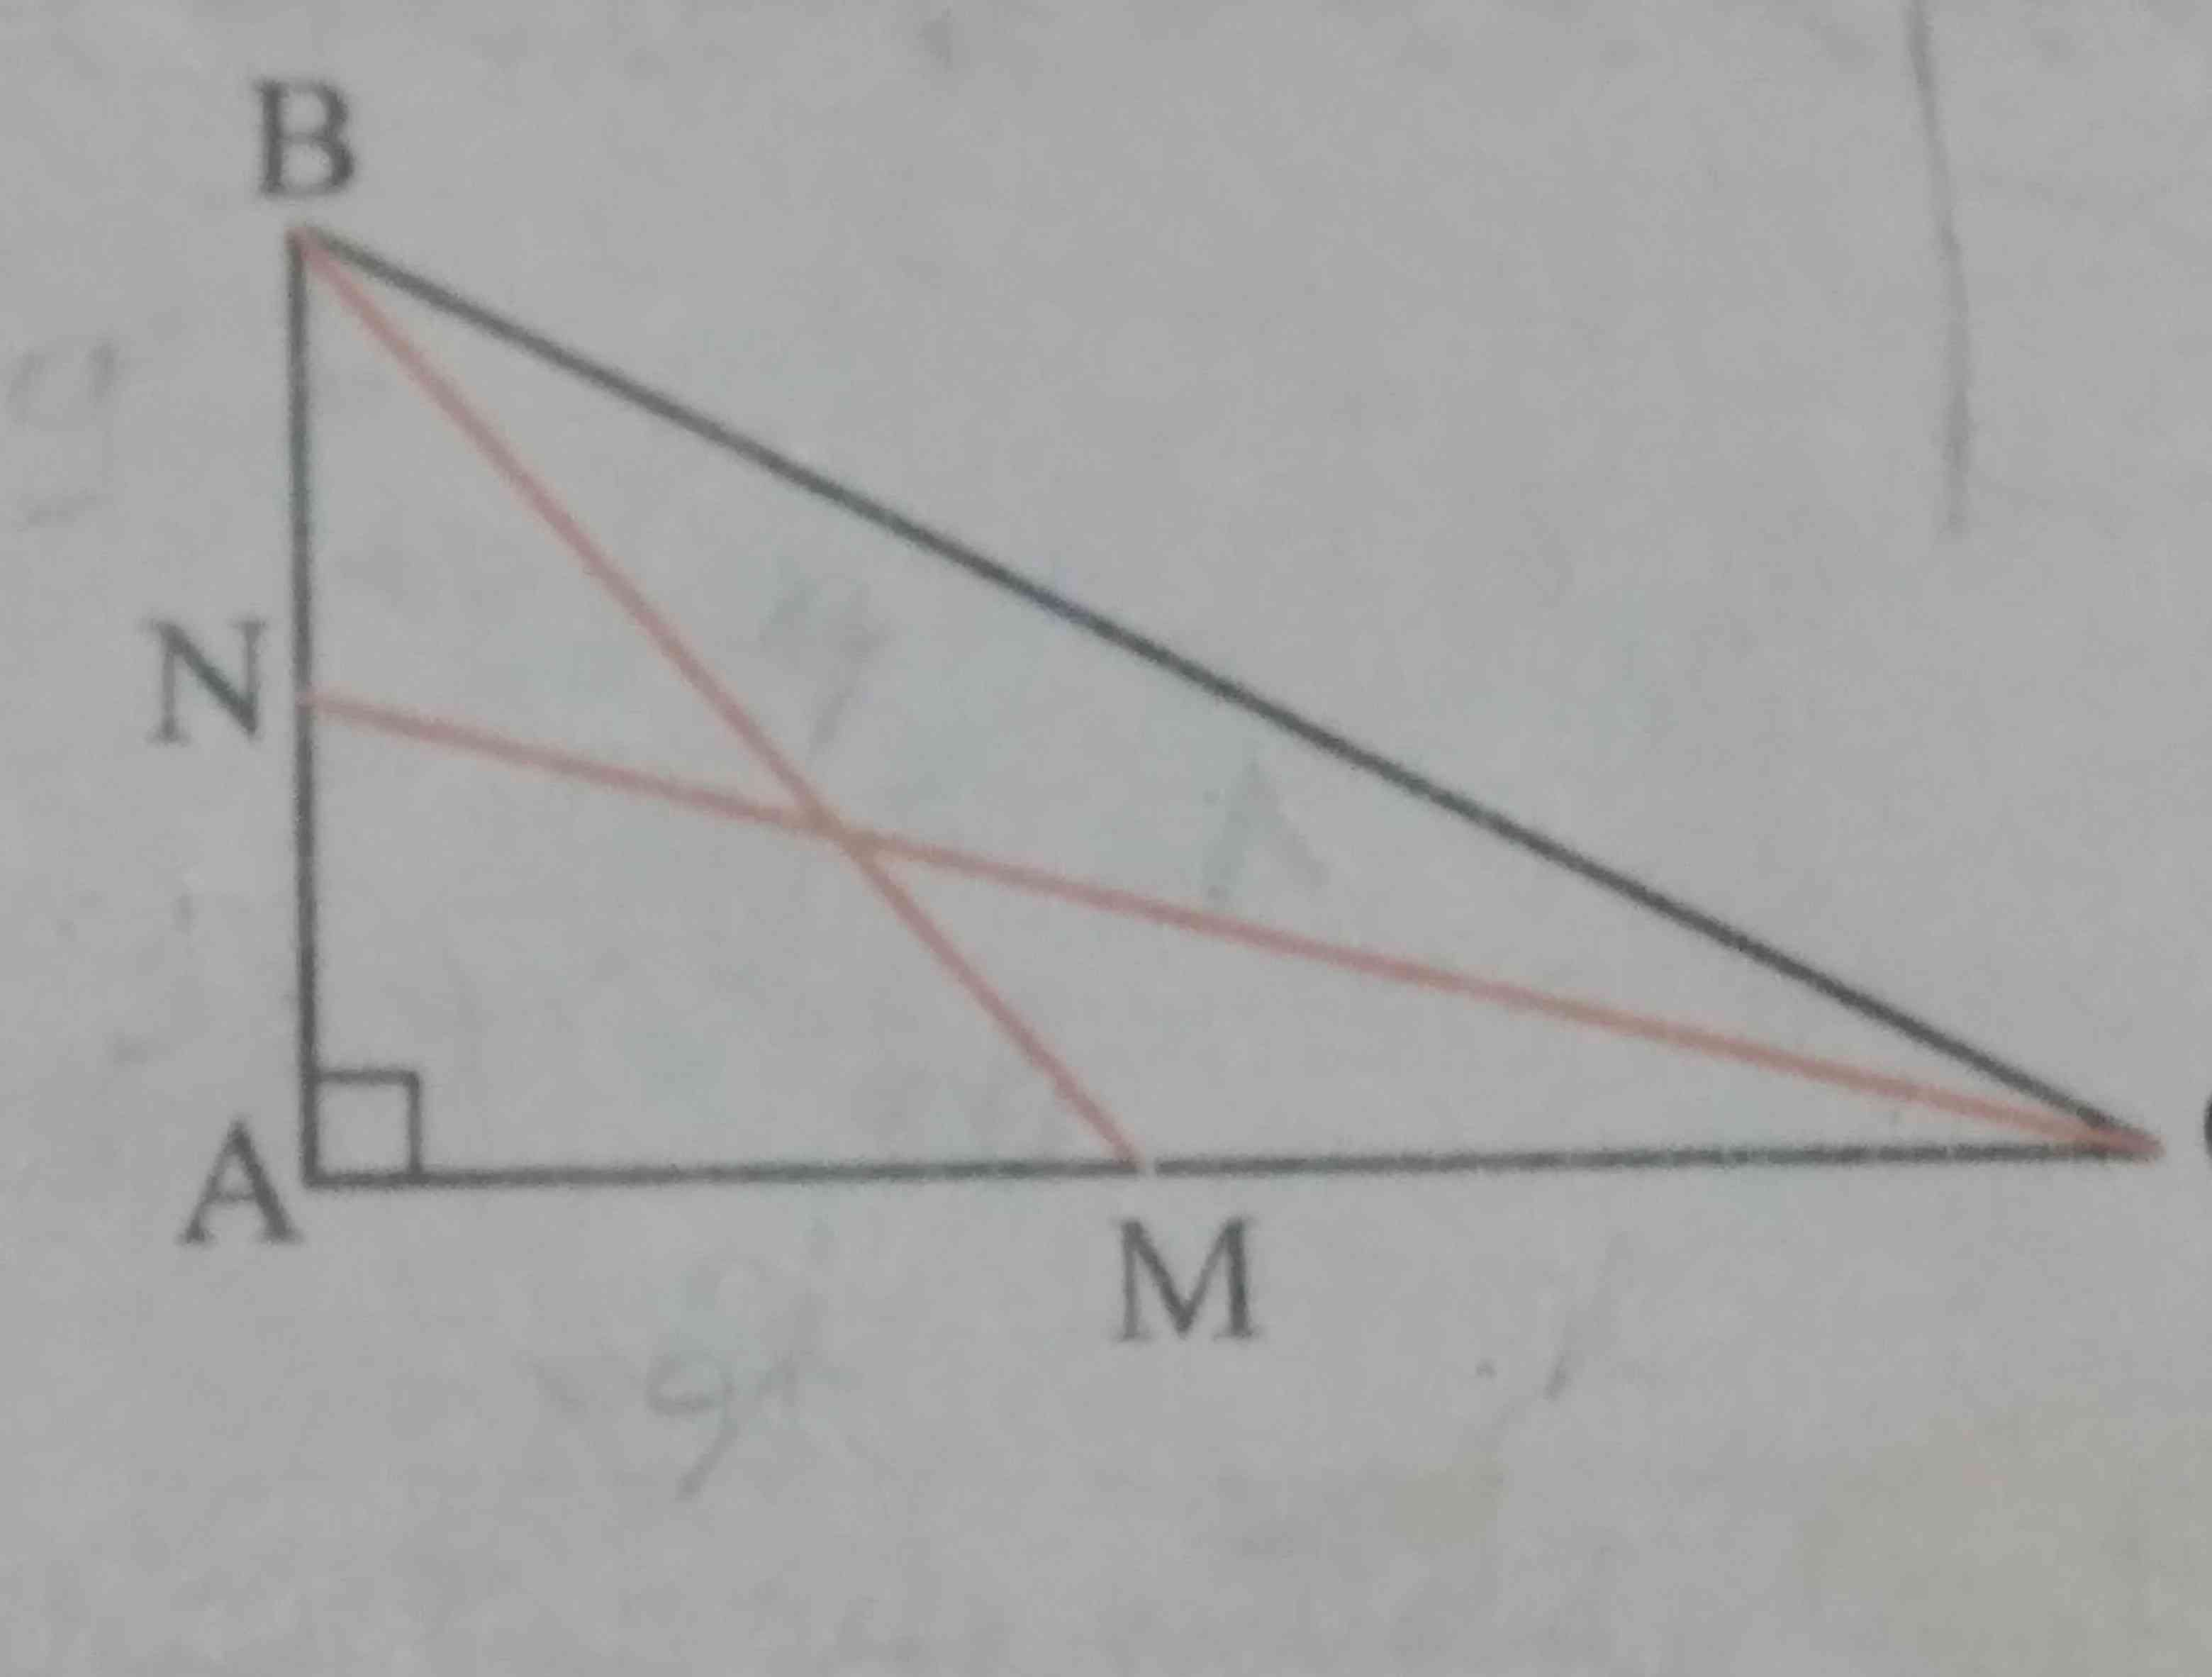 در مثلث قائم الزاویه ABC طول میانه های نظیر اضلاع زاویه قائمه ۶ و ۸ است اندازه وتر را محاسبه کنید 
لطفا اگر پاسخ یا ایده ای دارید بدید تاج میدم خیلی مهمه 